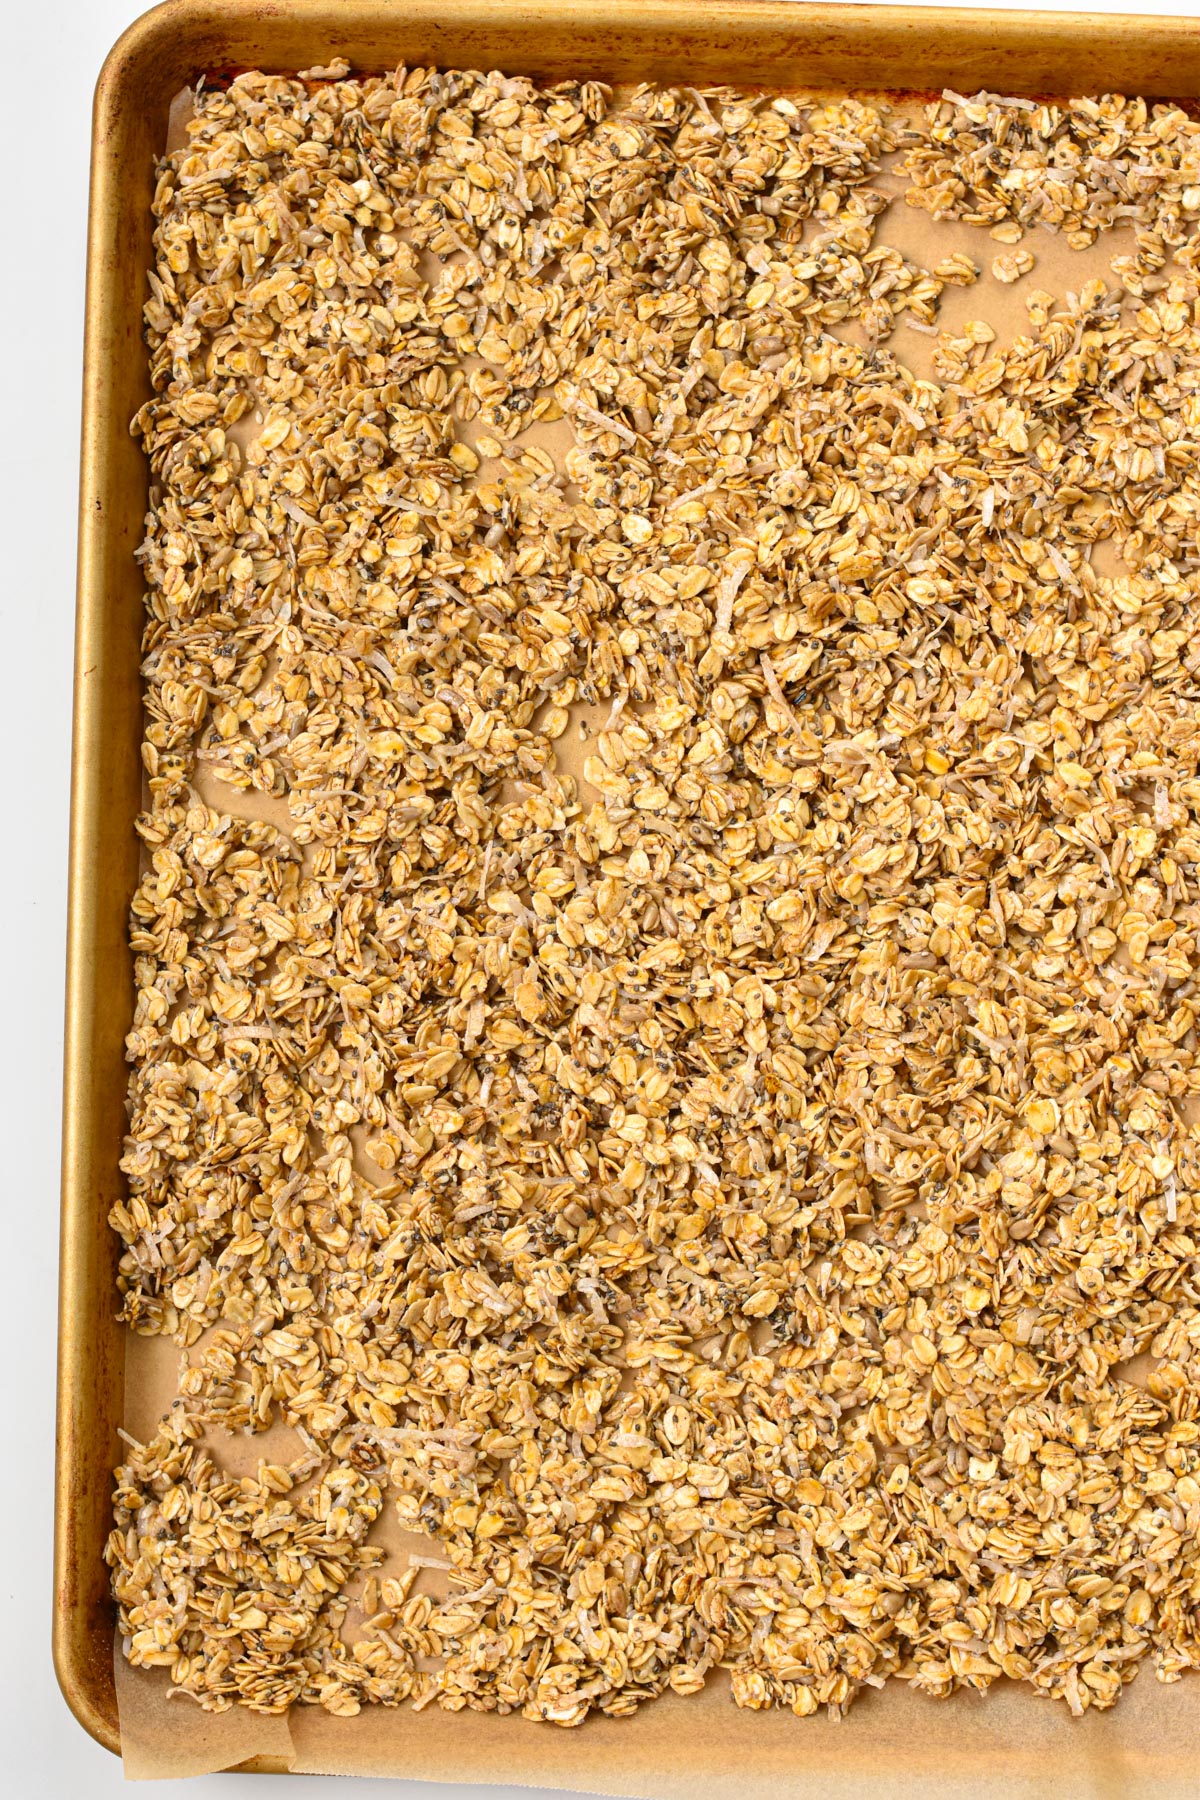 unbaked Nut-free Granola on a large baking sheet